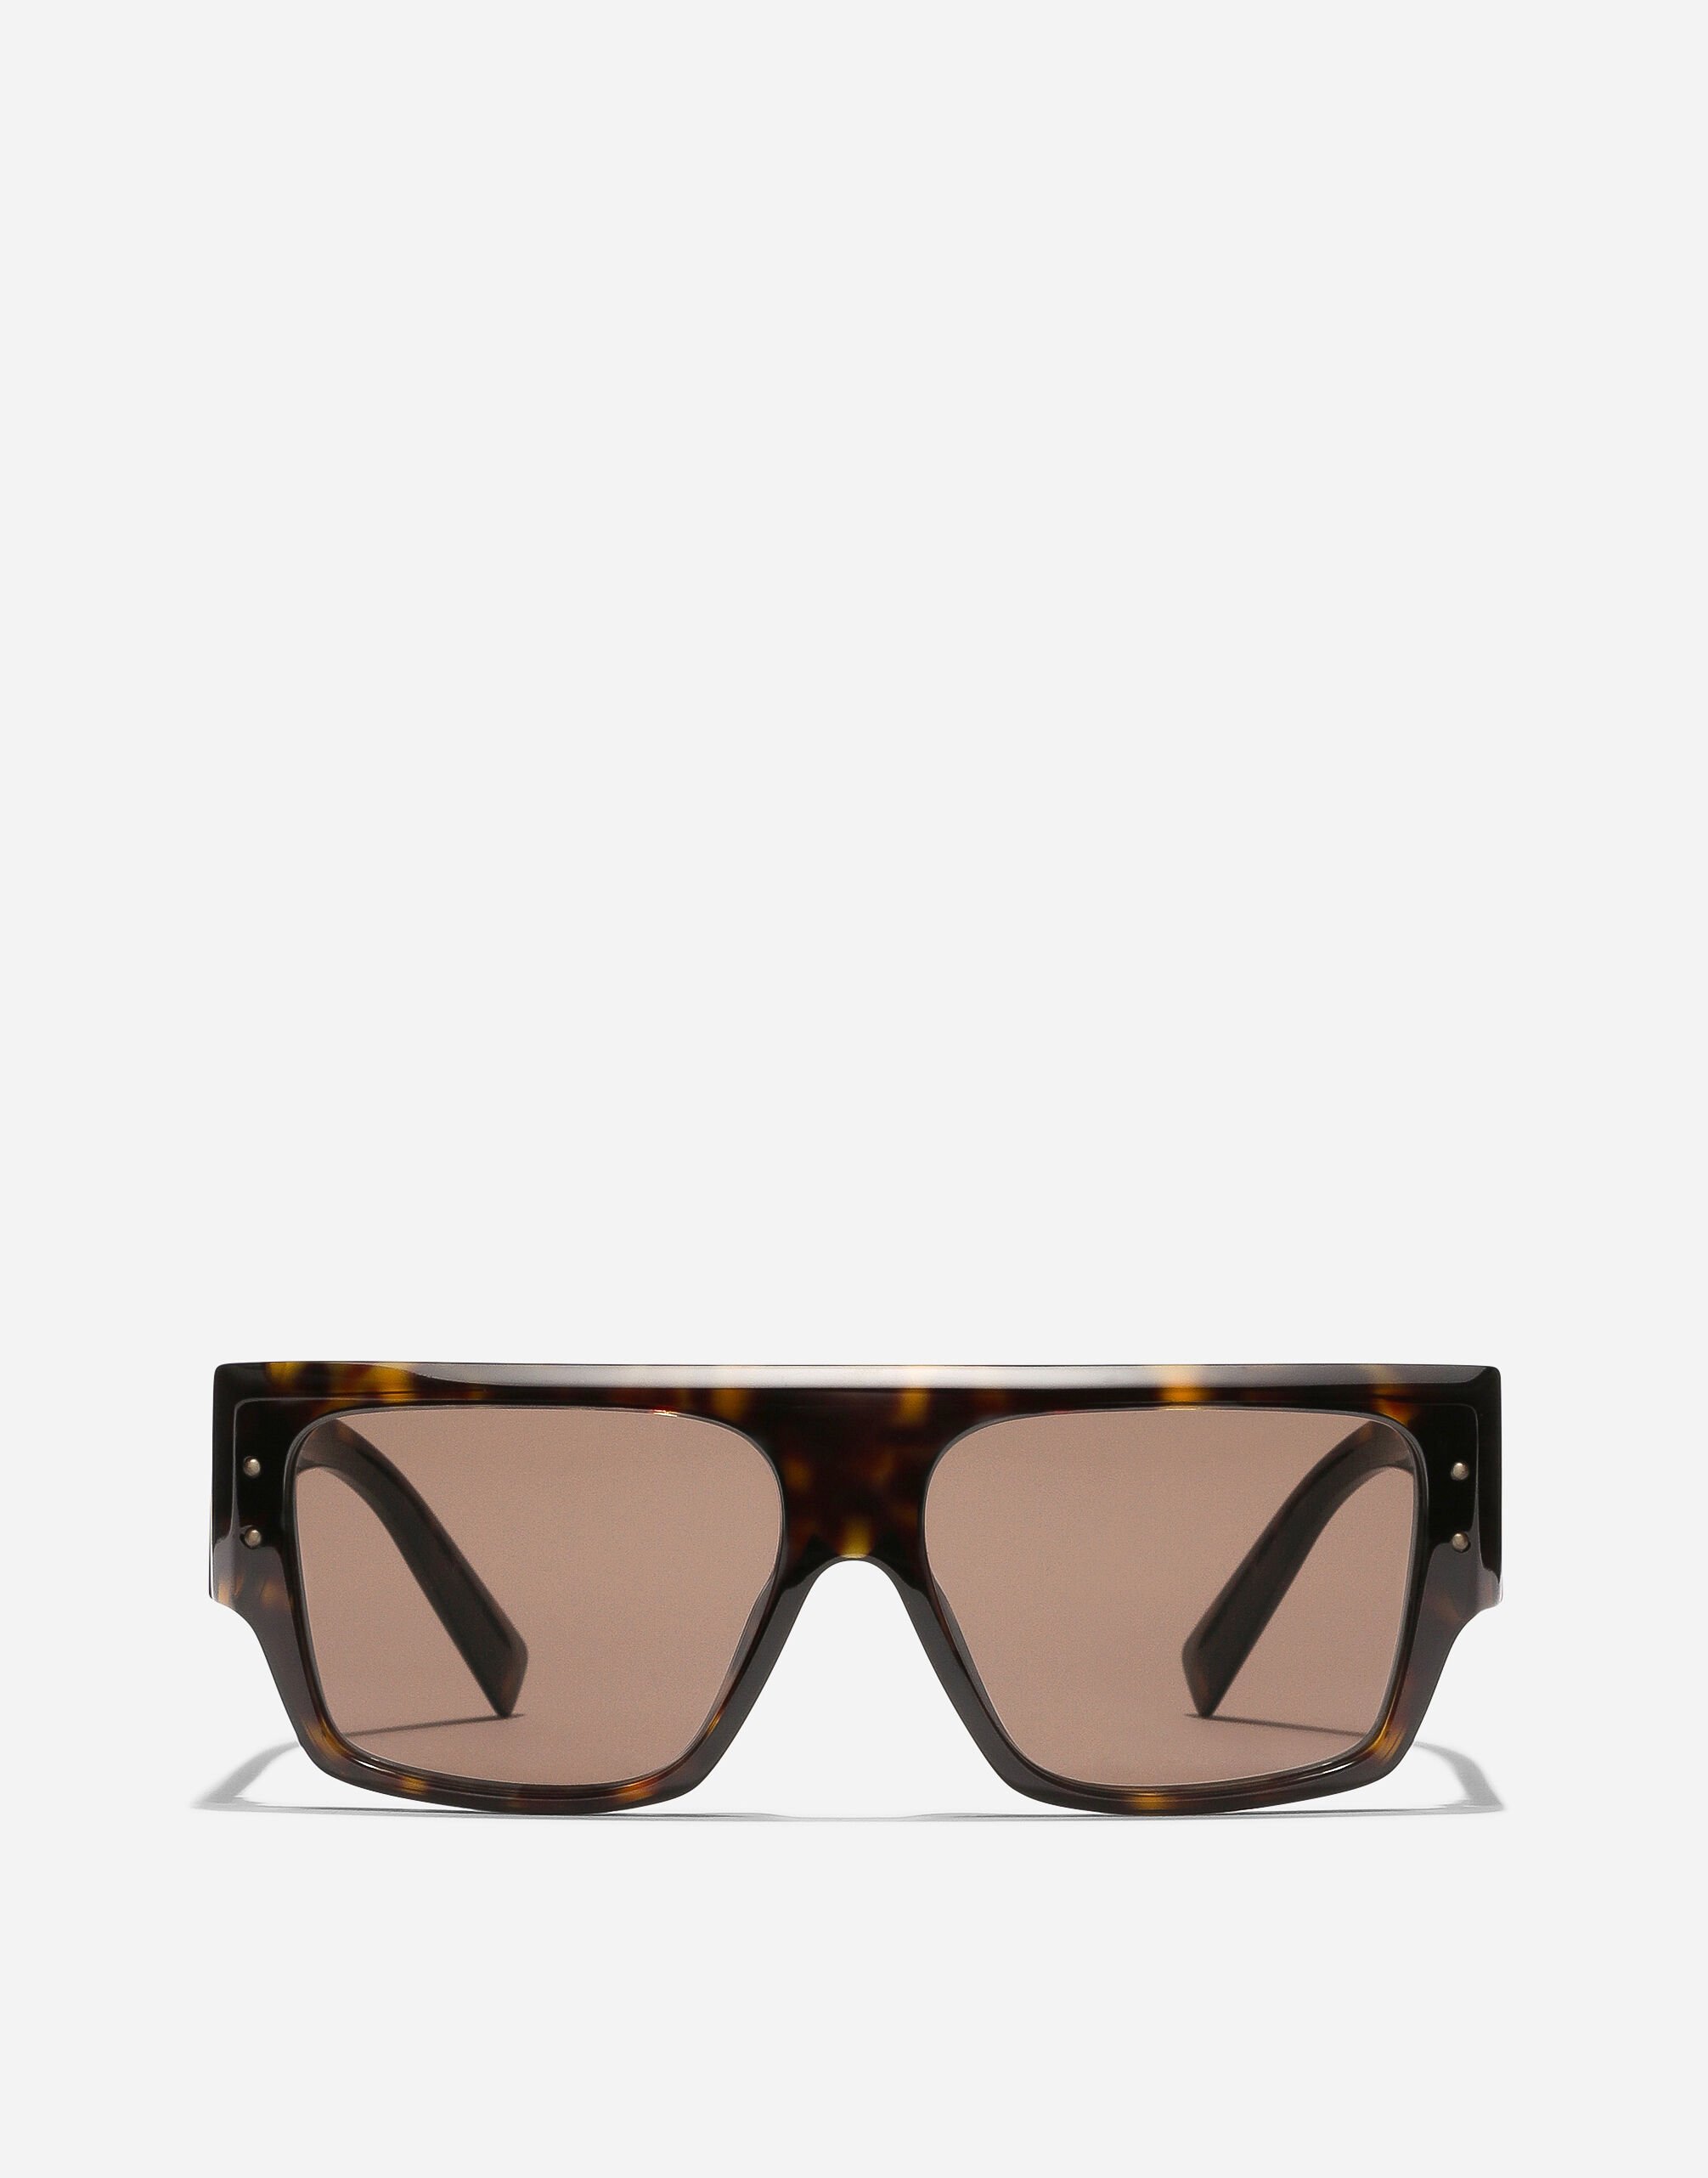 Dolce & Gabbana DNA Sunglasses Transparent pink VG446BVP830